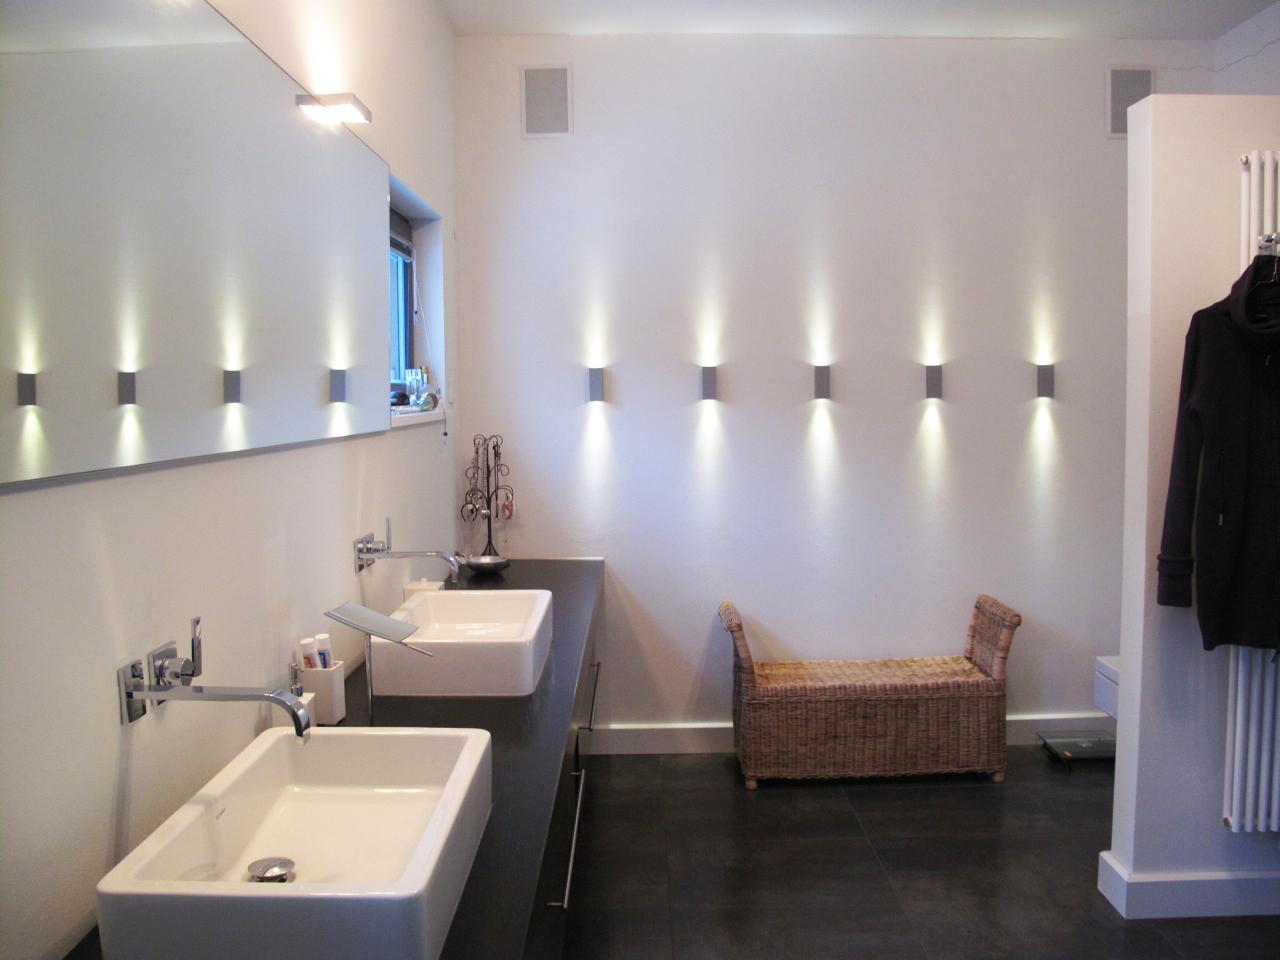 Wandstrahler im Badezimmer #waschtisch #badezimmerbank #badbeleuchtung ©scout for location